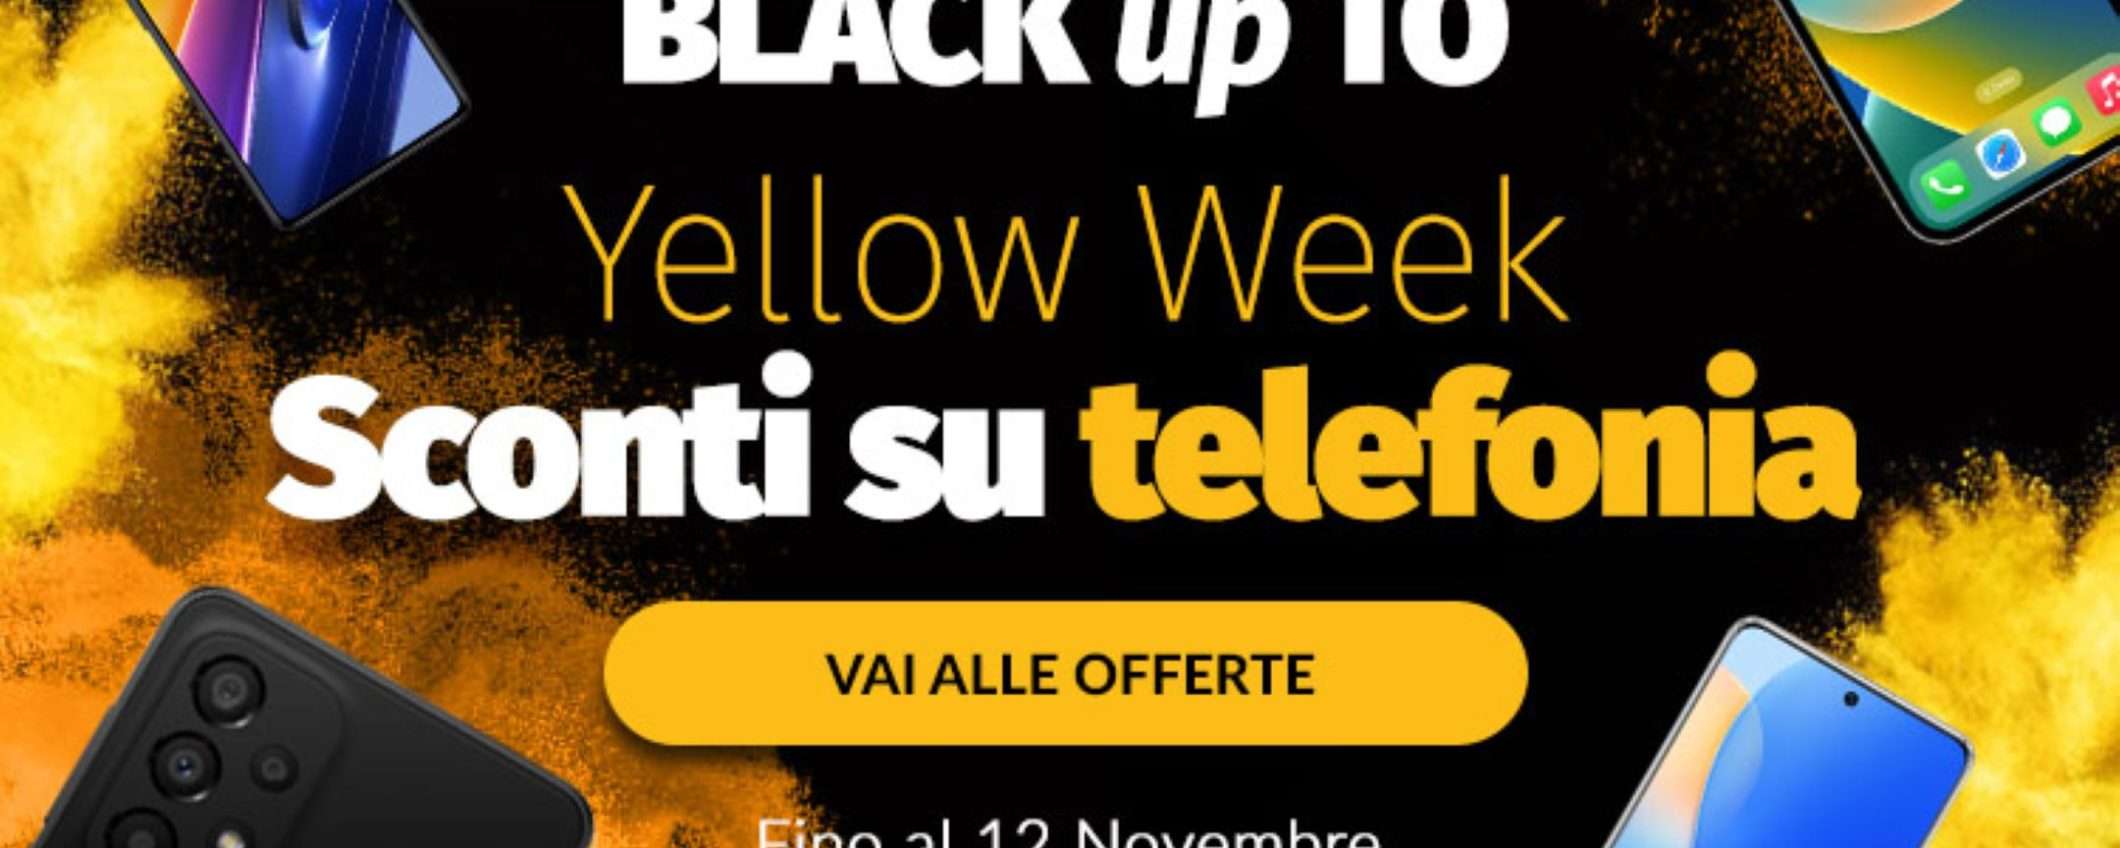 Su ePRICE la Yellow Week profuma di Black Friday: super offerte su smartphone e auricolari